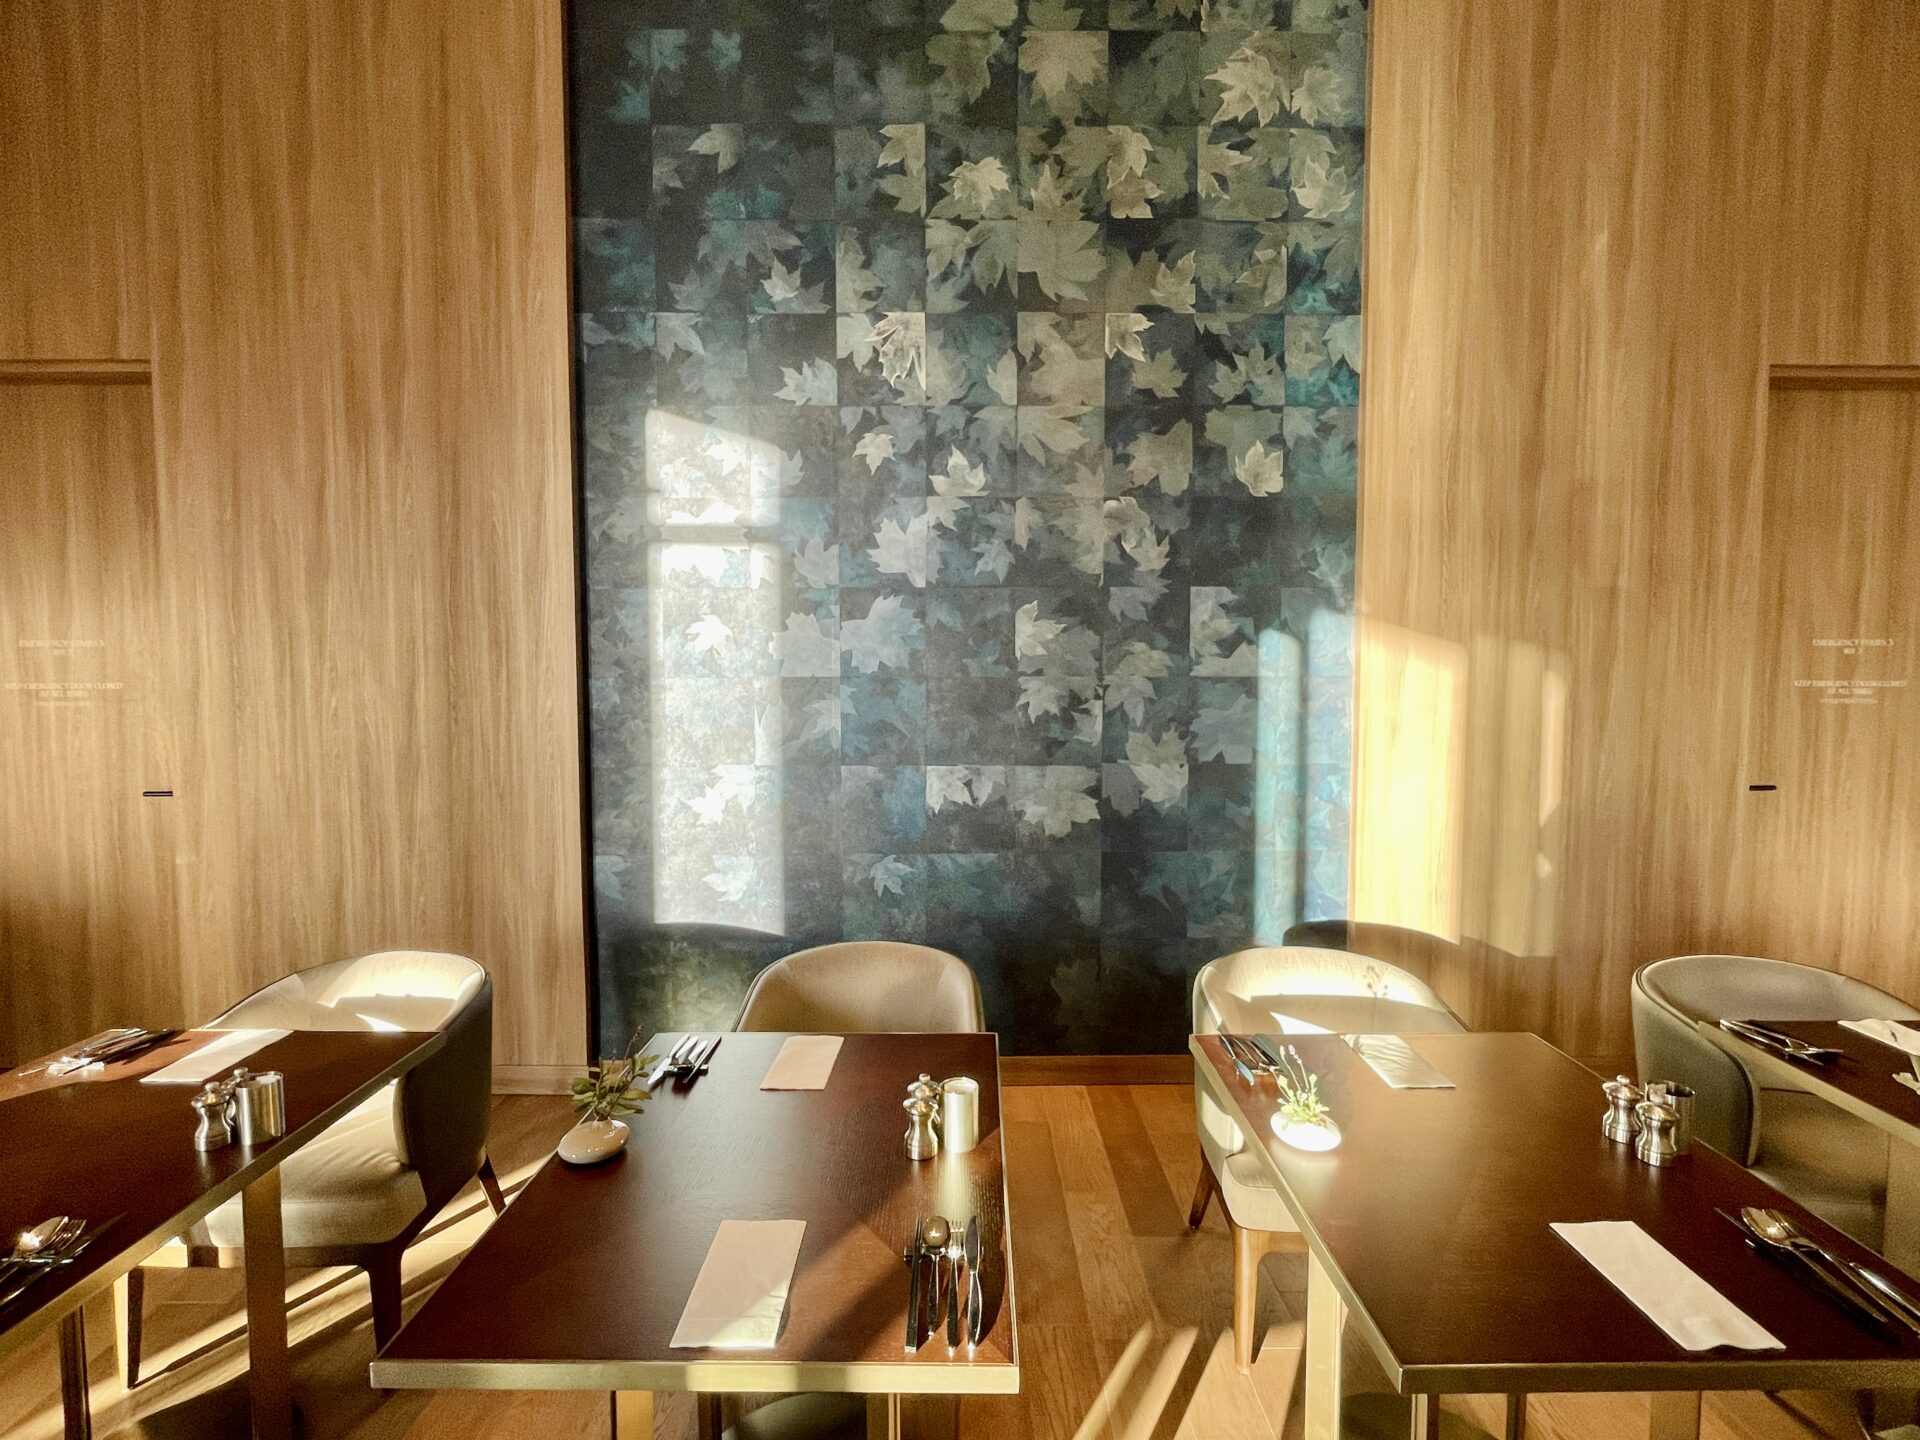 「ヒルトン東京」朝食ビュッフェ会場モザイク 2人がけのテーブル席